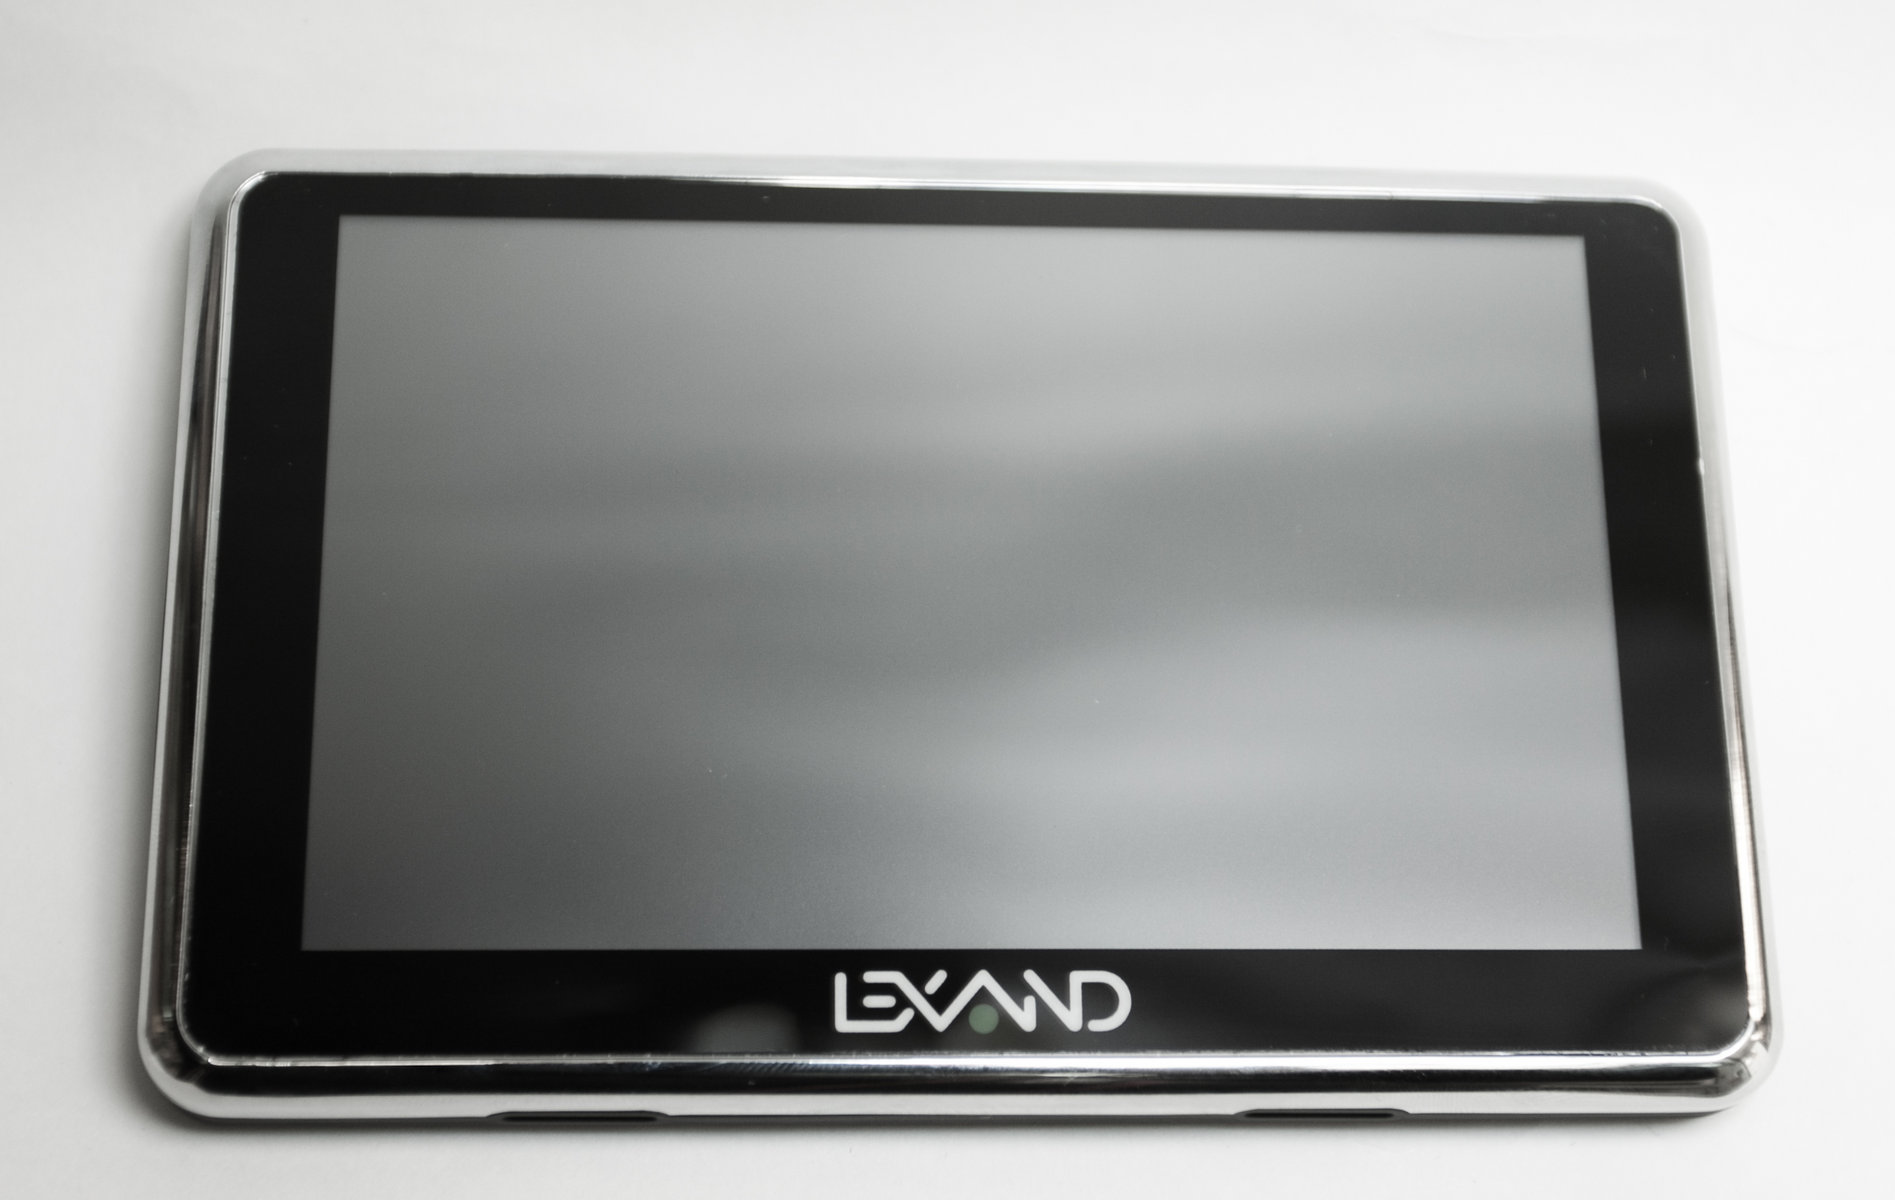 Lexand SR-5550 HD